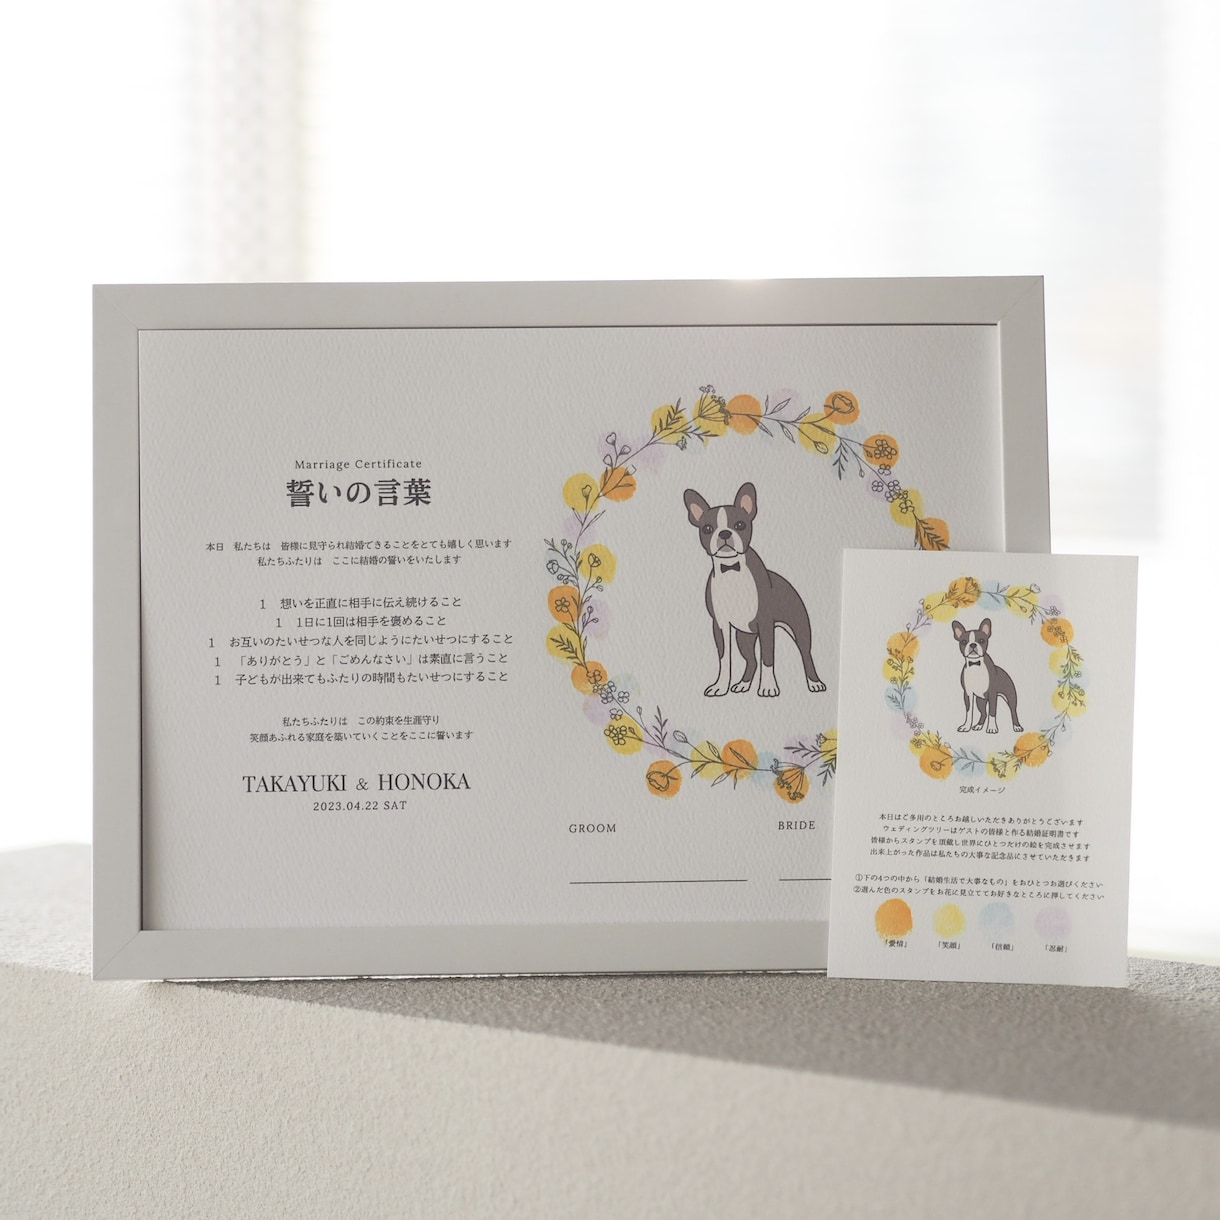 愛犬家さんのための結婚証明書作ります 大すきな愛犬のイラスト付き